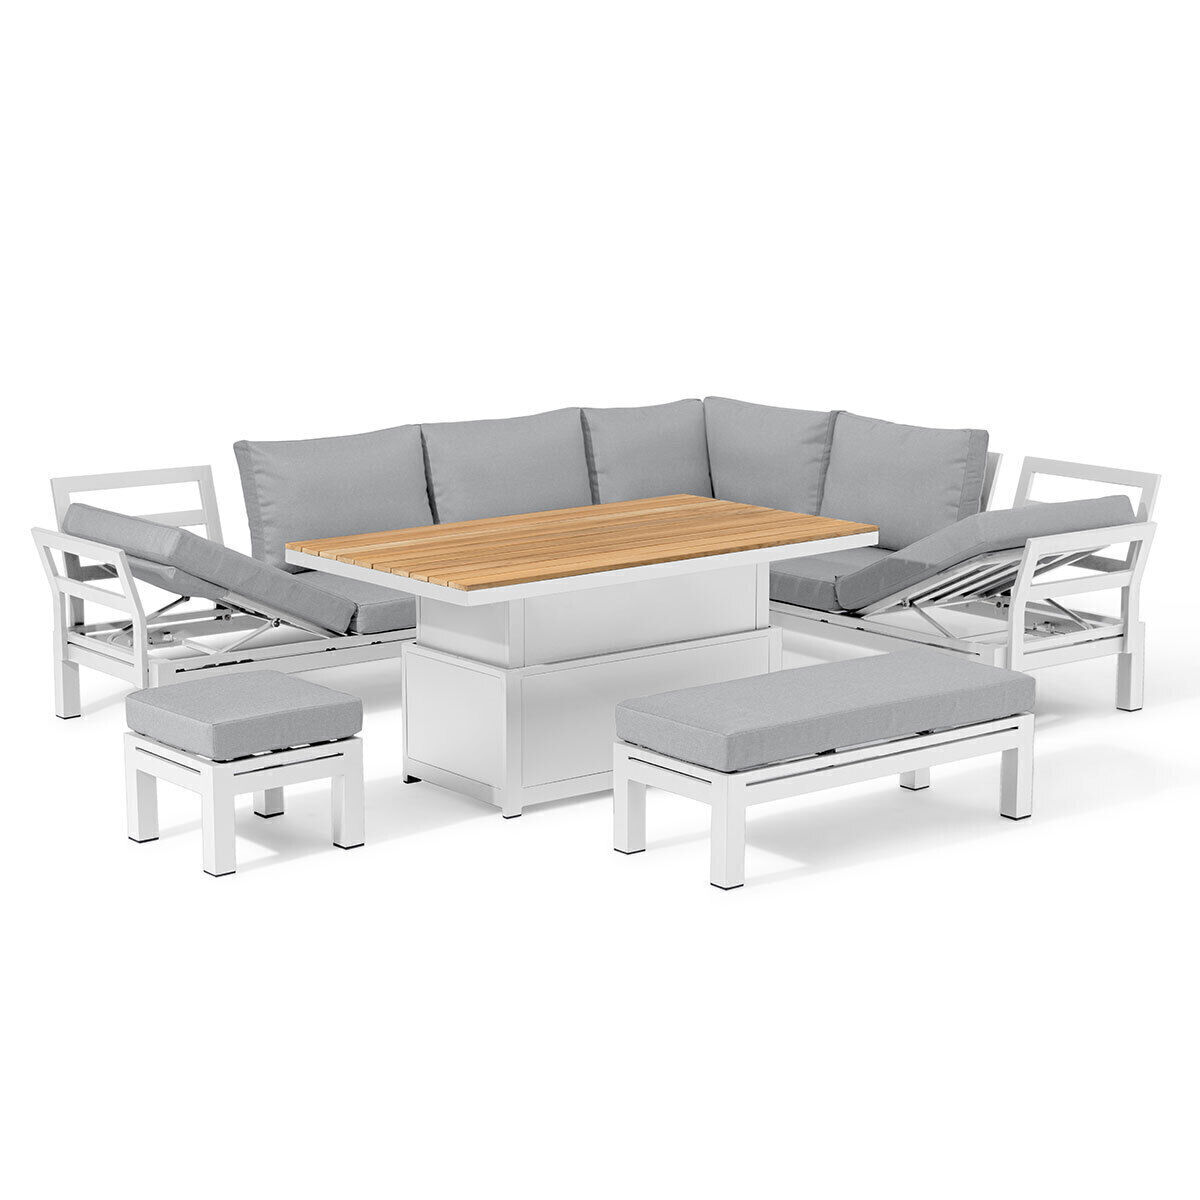 Maze - Oslo Aluminium Corner Group with Teak Rising Table - White product image